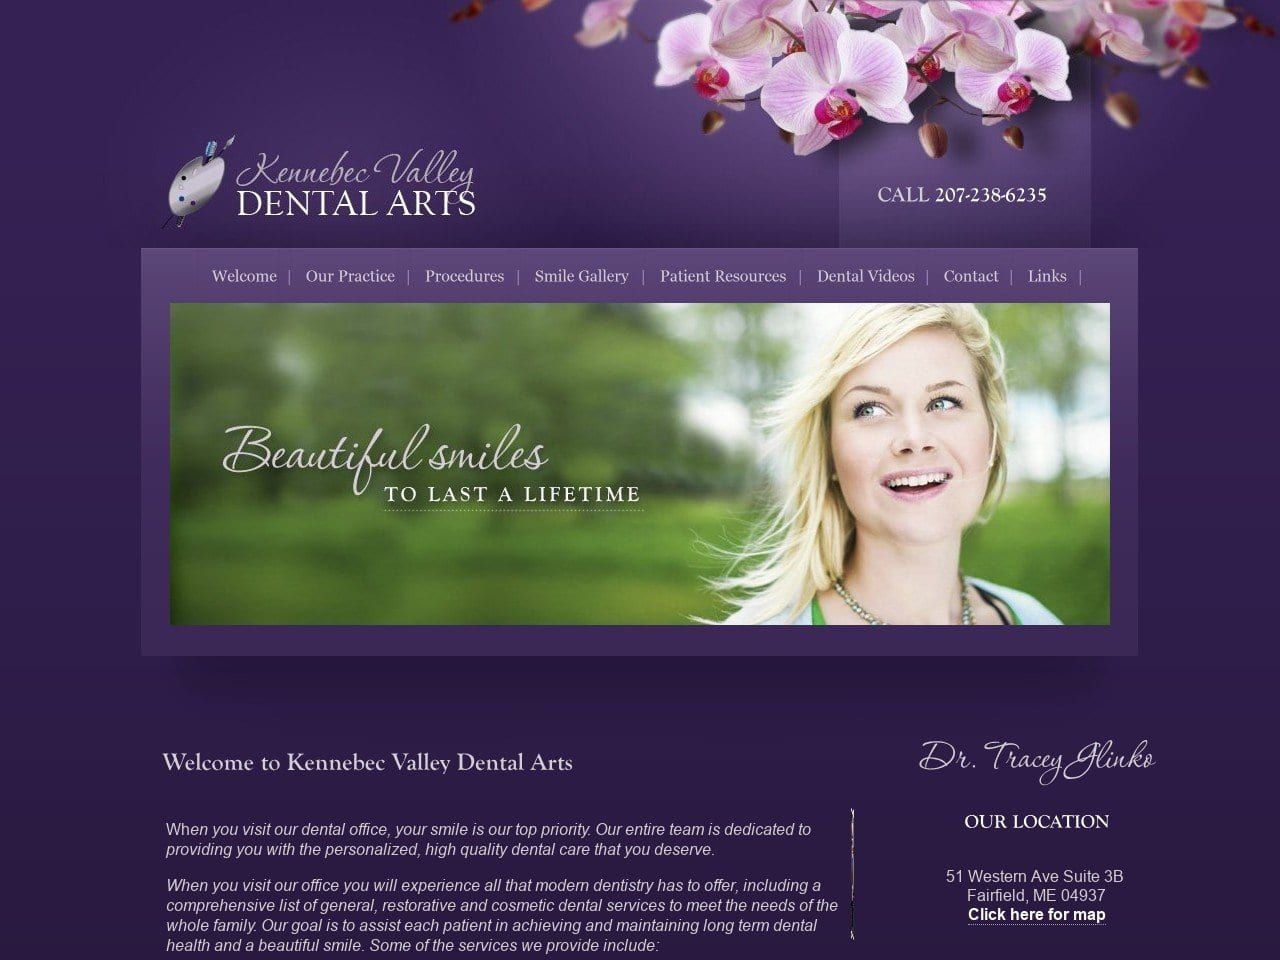 Kennebec Valley Dental Arts Website Screenshot from kvdentalarts.com